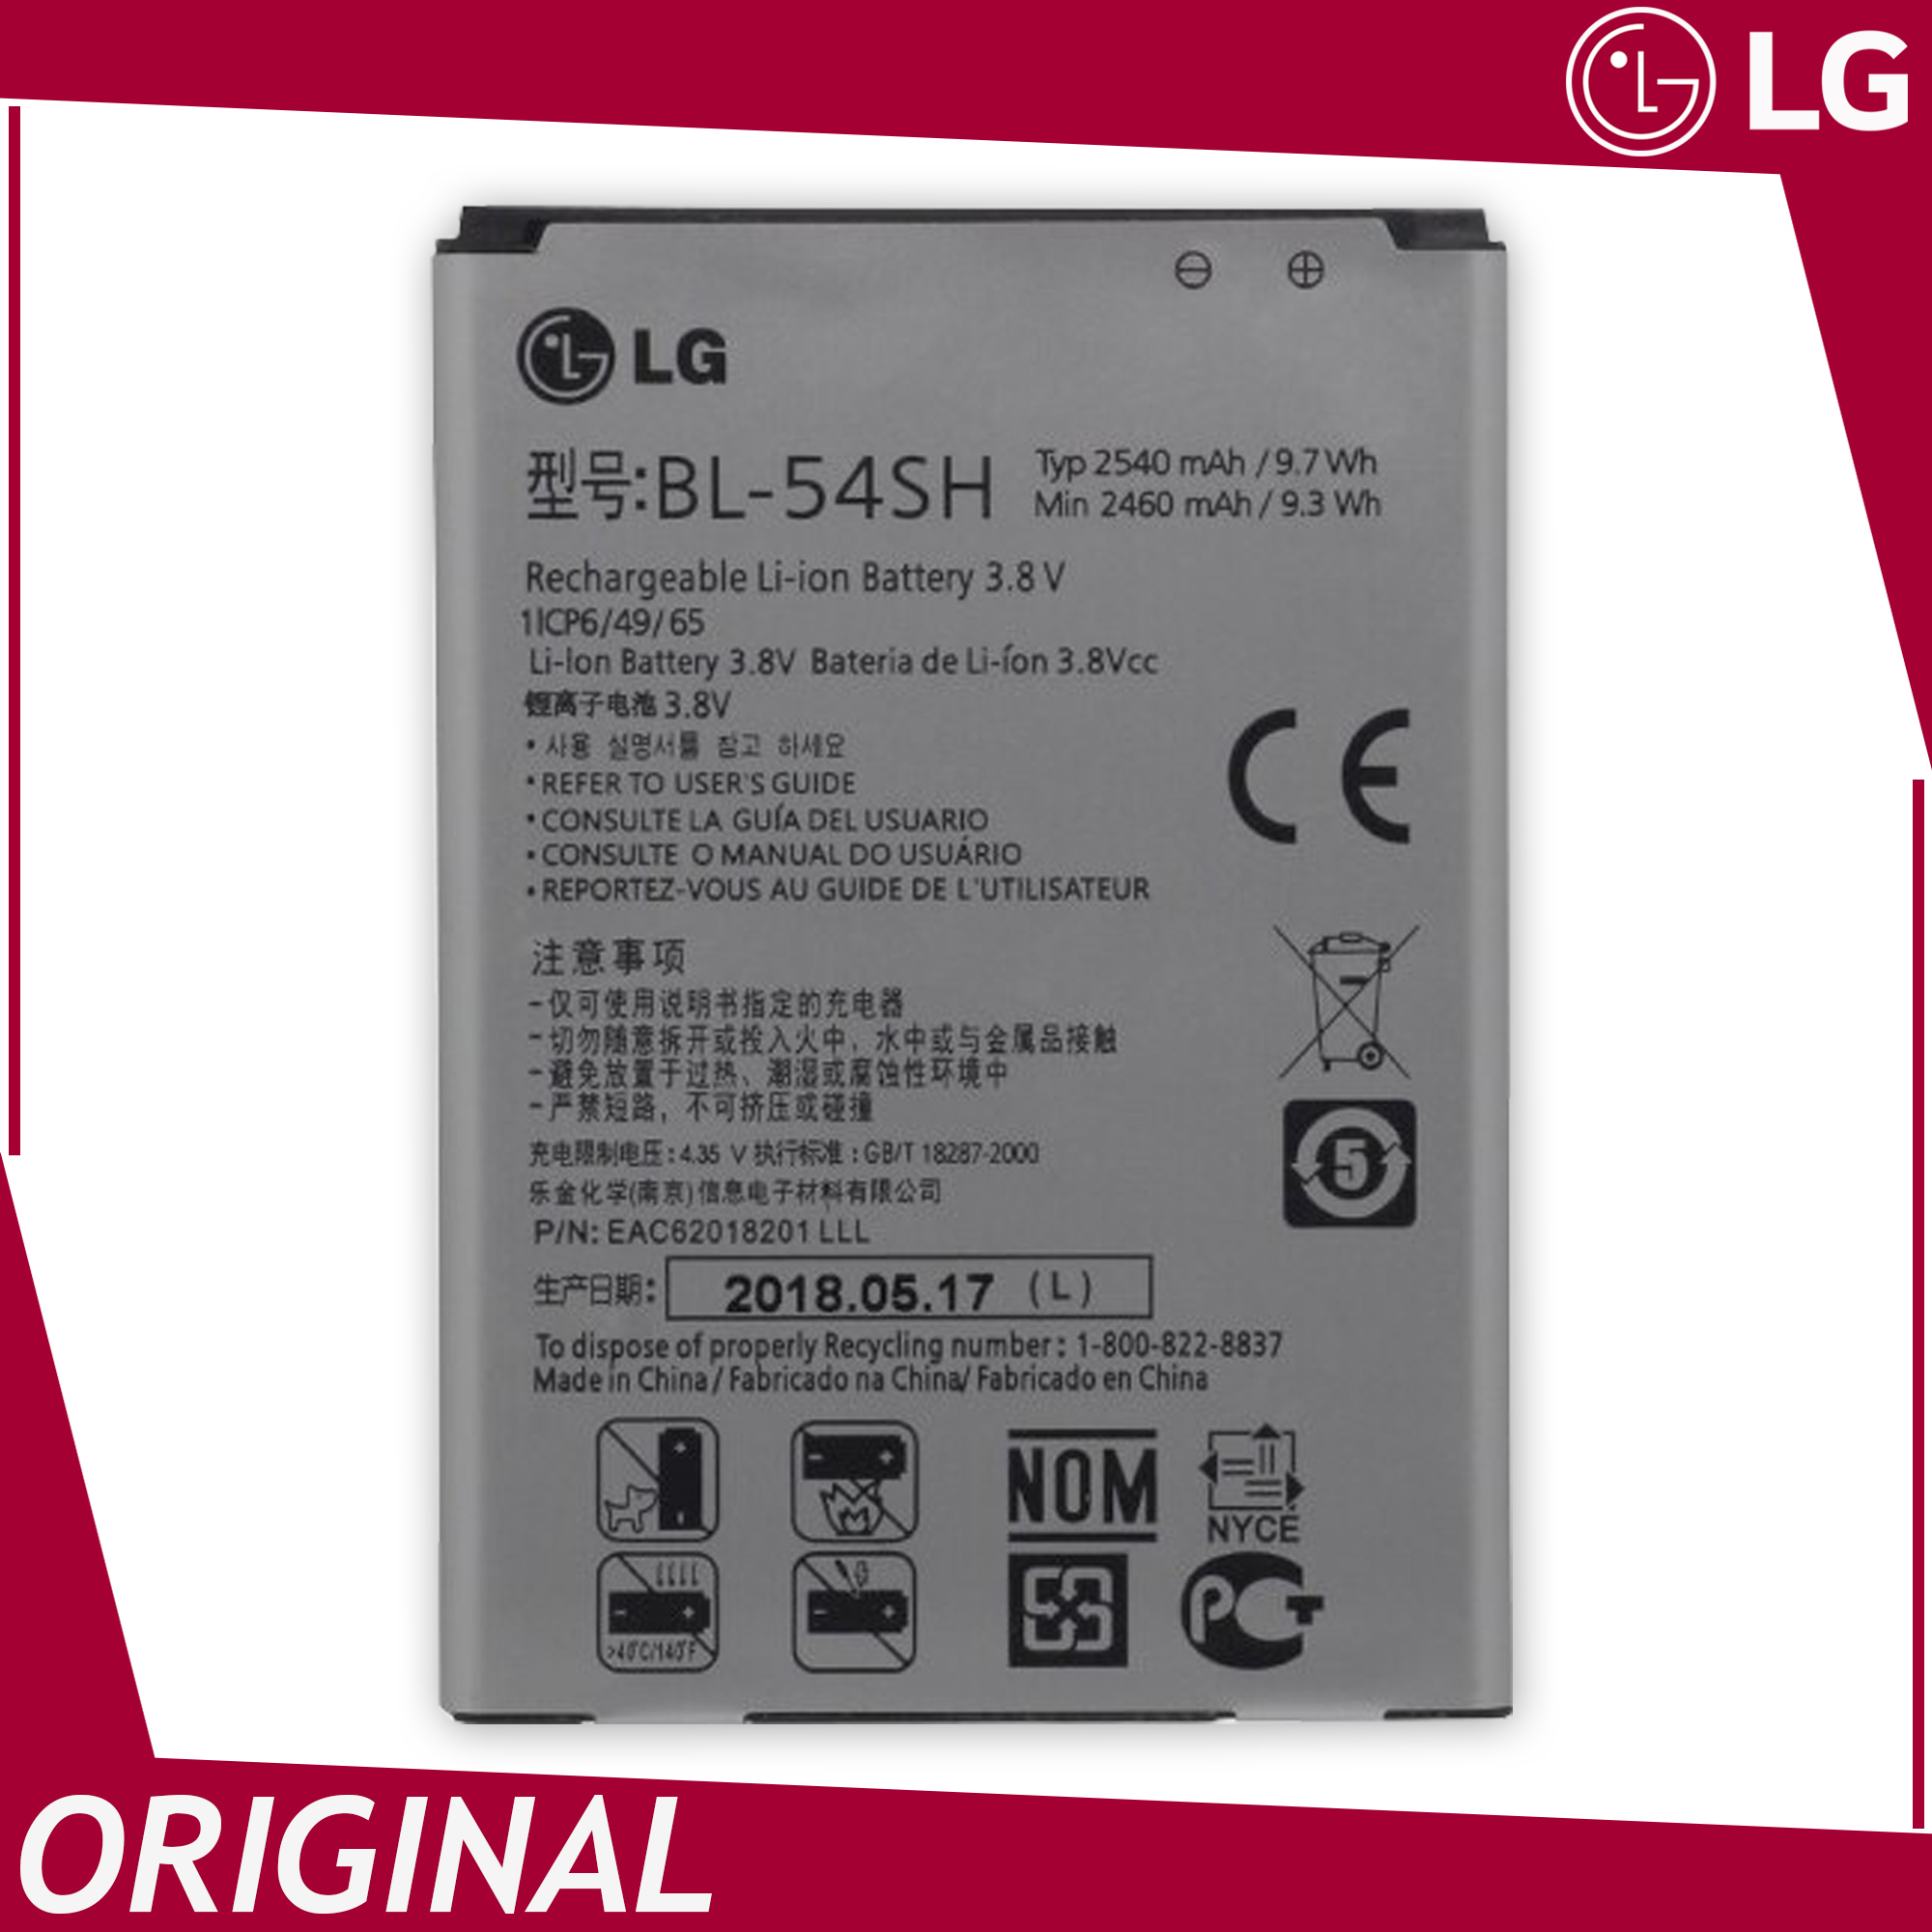 LG G3 Mini Battery Original, Model BL-54SH (2540mAh) High Capacity Phone  Battery, ADVANSITY | Lazada PH